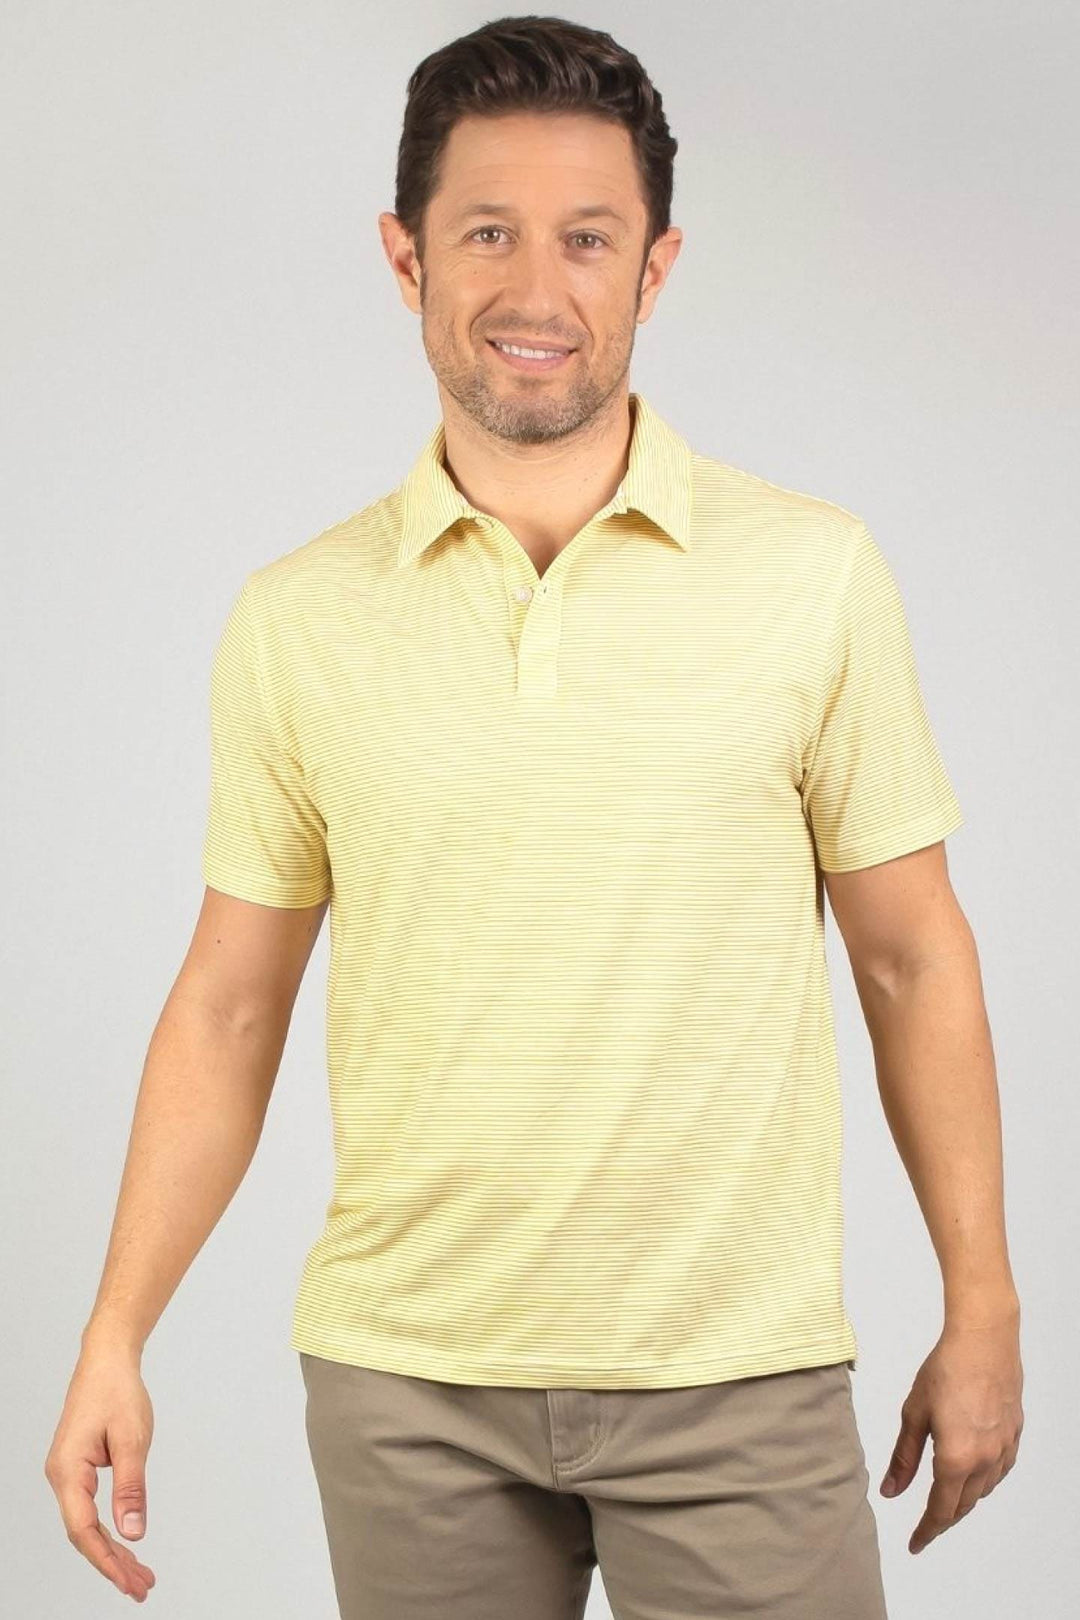 Buy Mustard Stripes Tech Polo for Short Men | Ash & Erie   Tech Polo Shirt